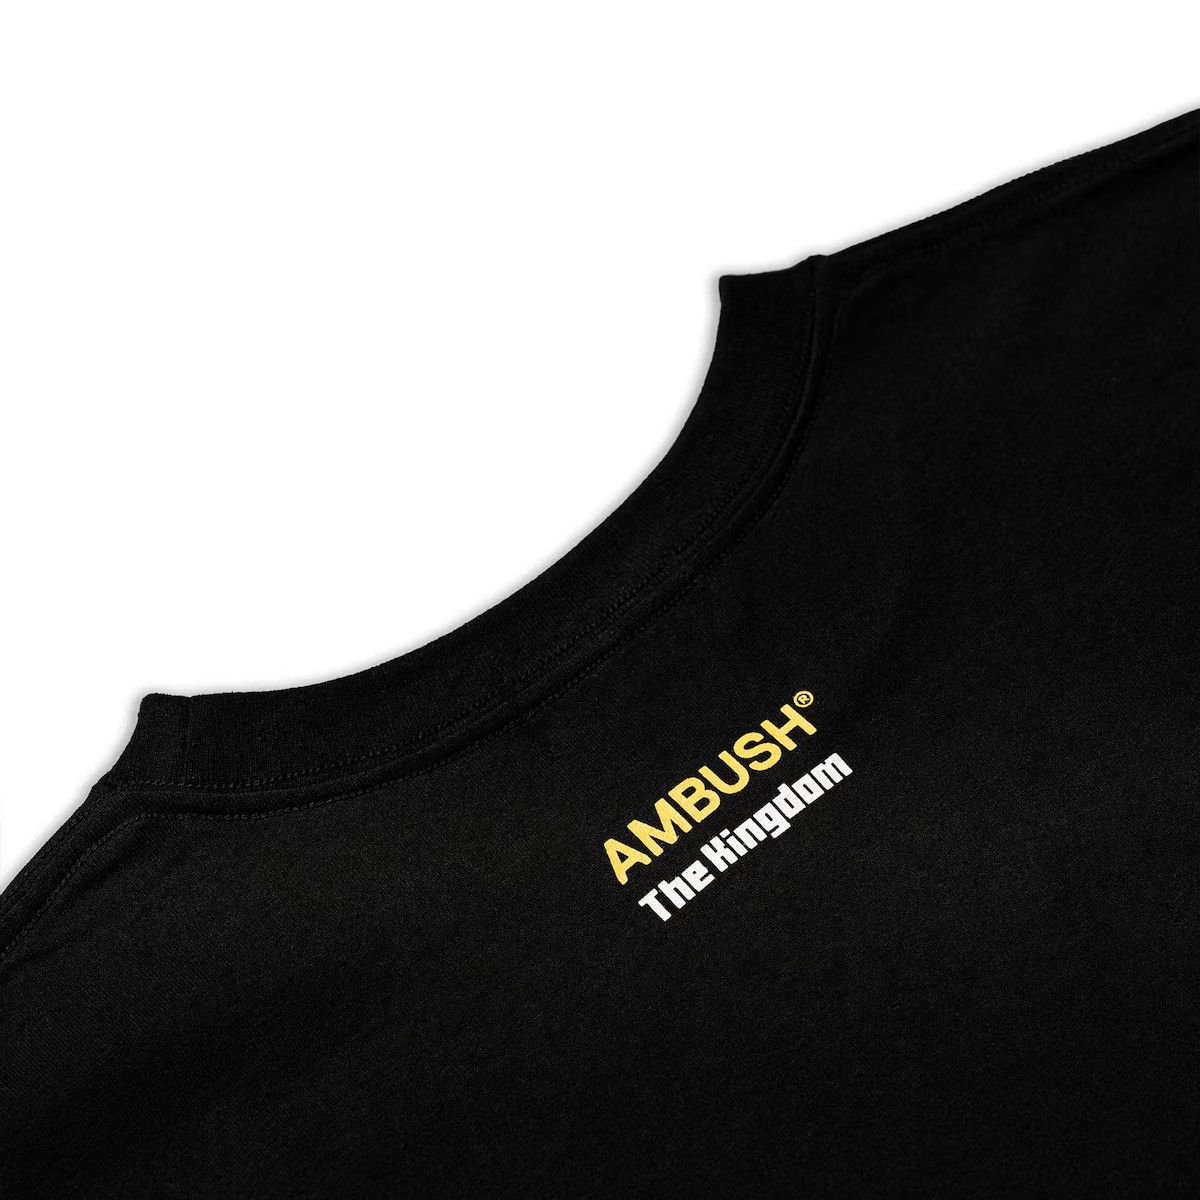 Ambush Design - STEAL! Ambush x VIP Monkey Kingdom Logo Tee - 7